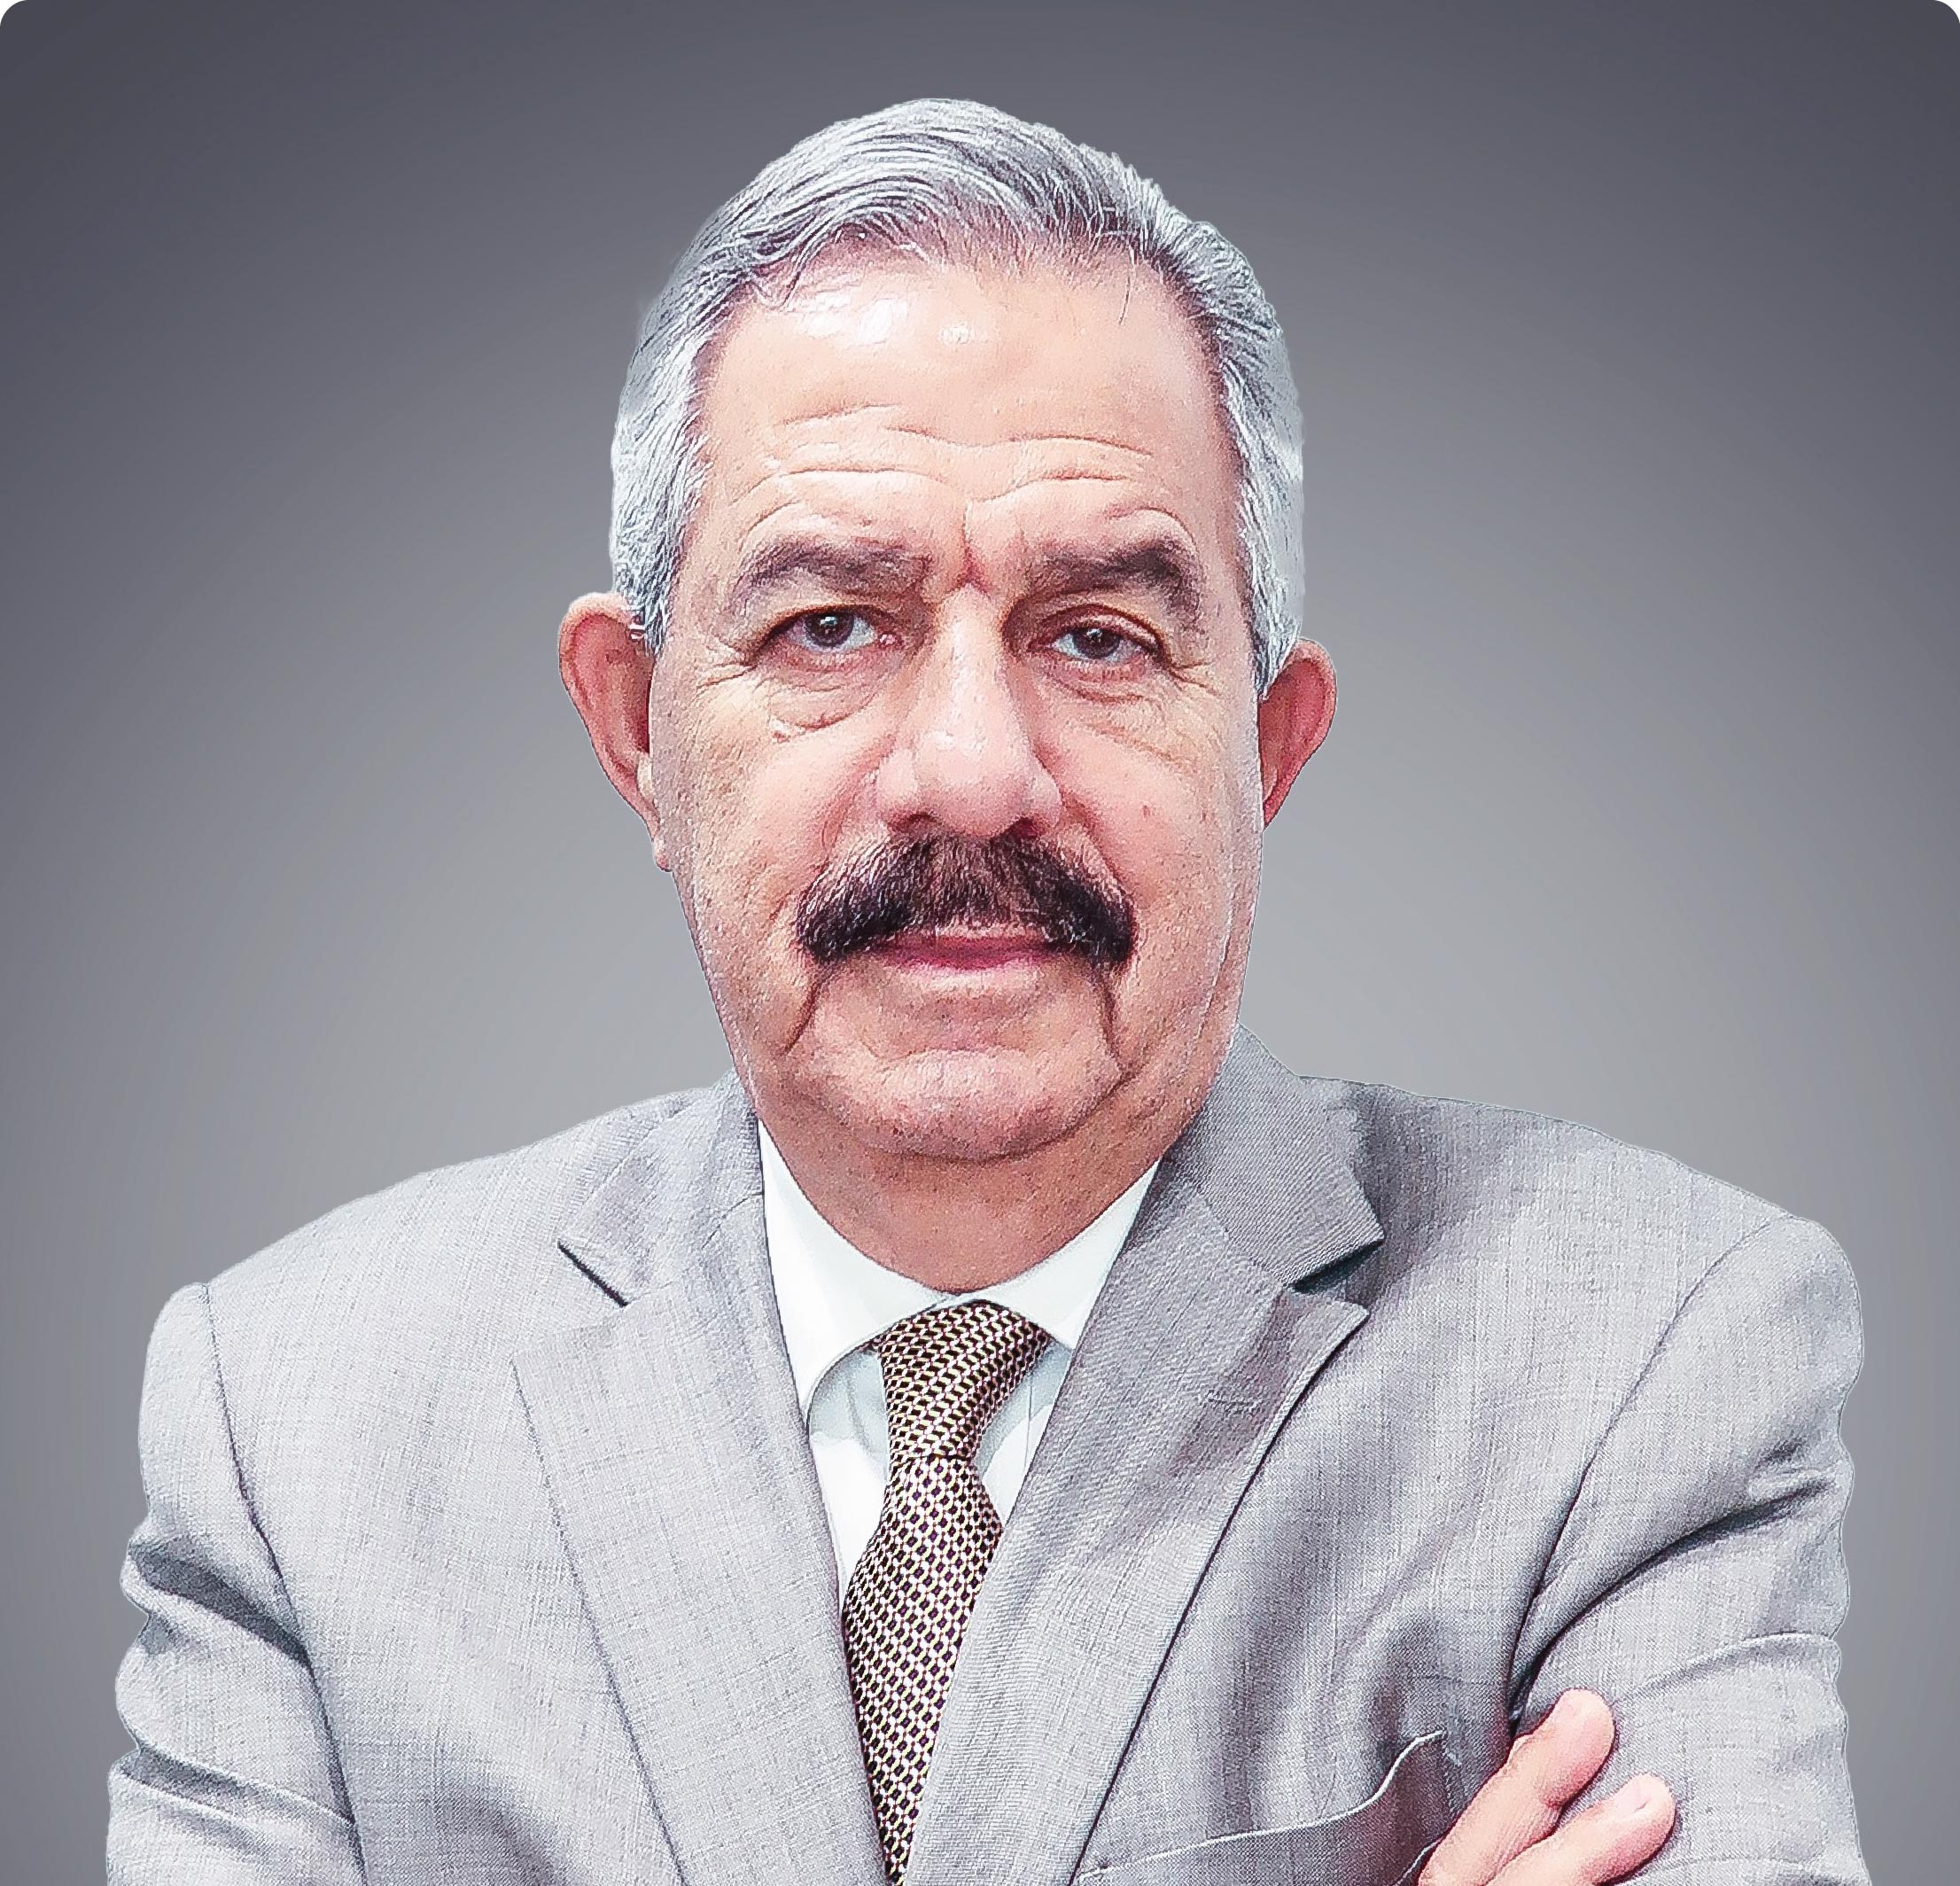 Mr. Abdel Karim Estaitieh